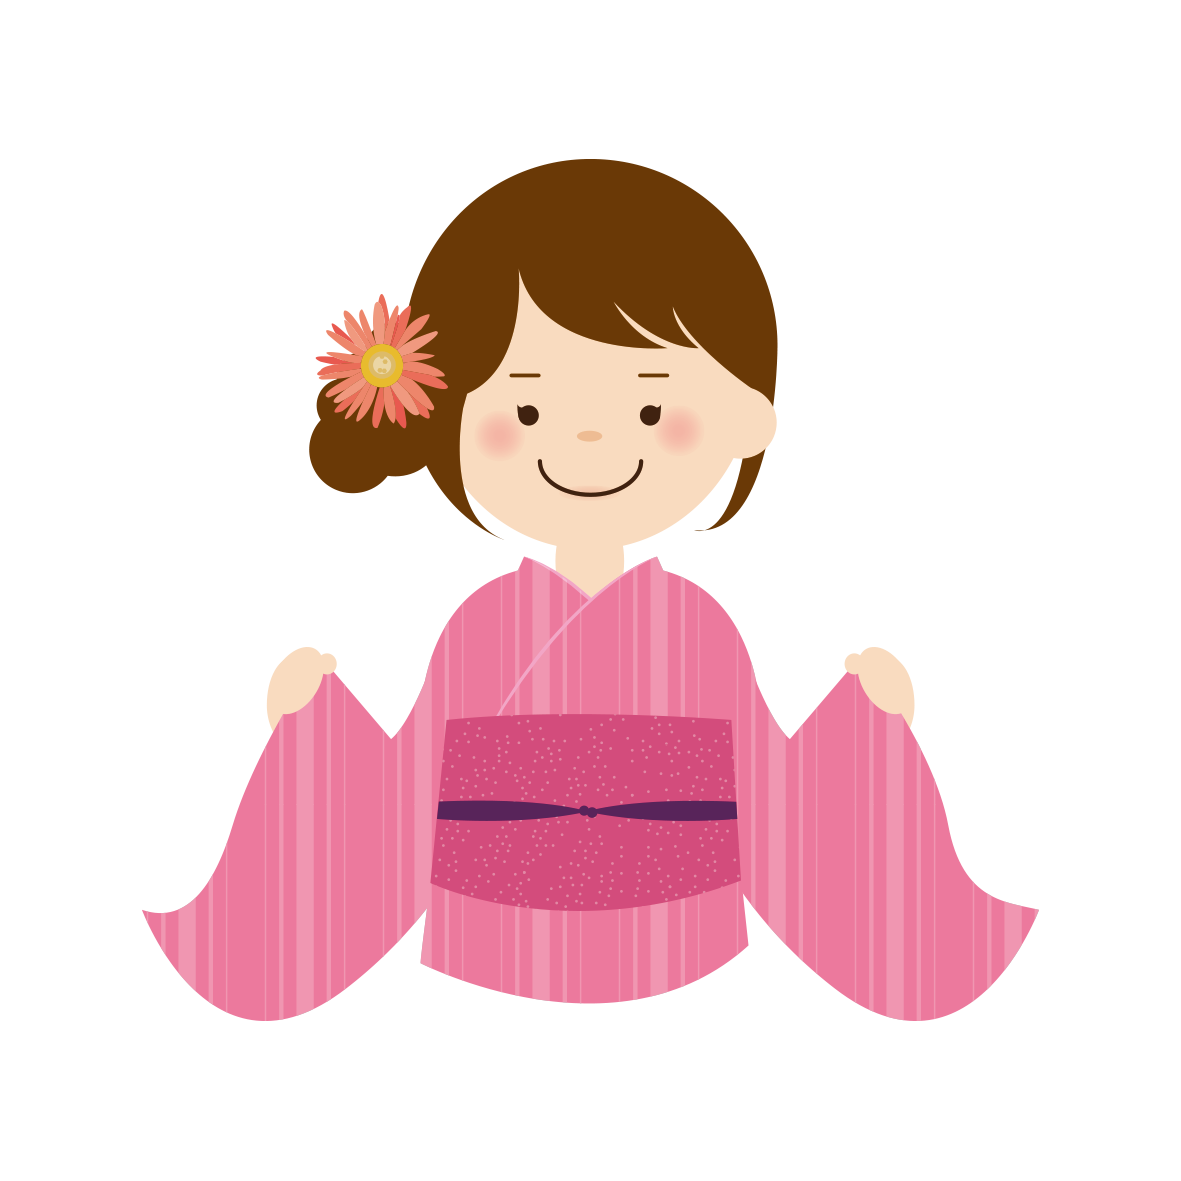 ピンク色ストライプ柄の浴衣を着た女の子のイラストです。夏祭りのお知らせにぴったり！うきうきと楽しい雰囲気です。